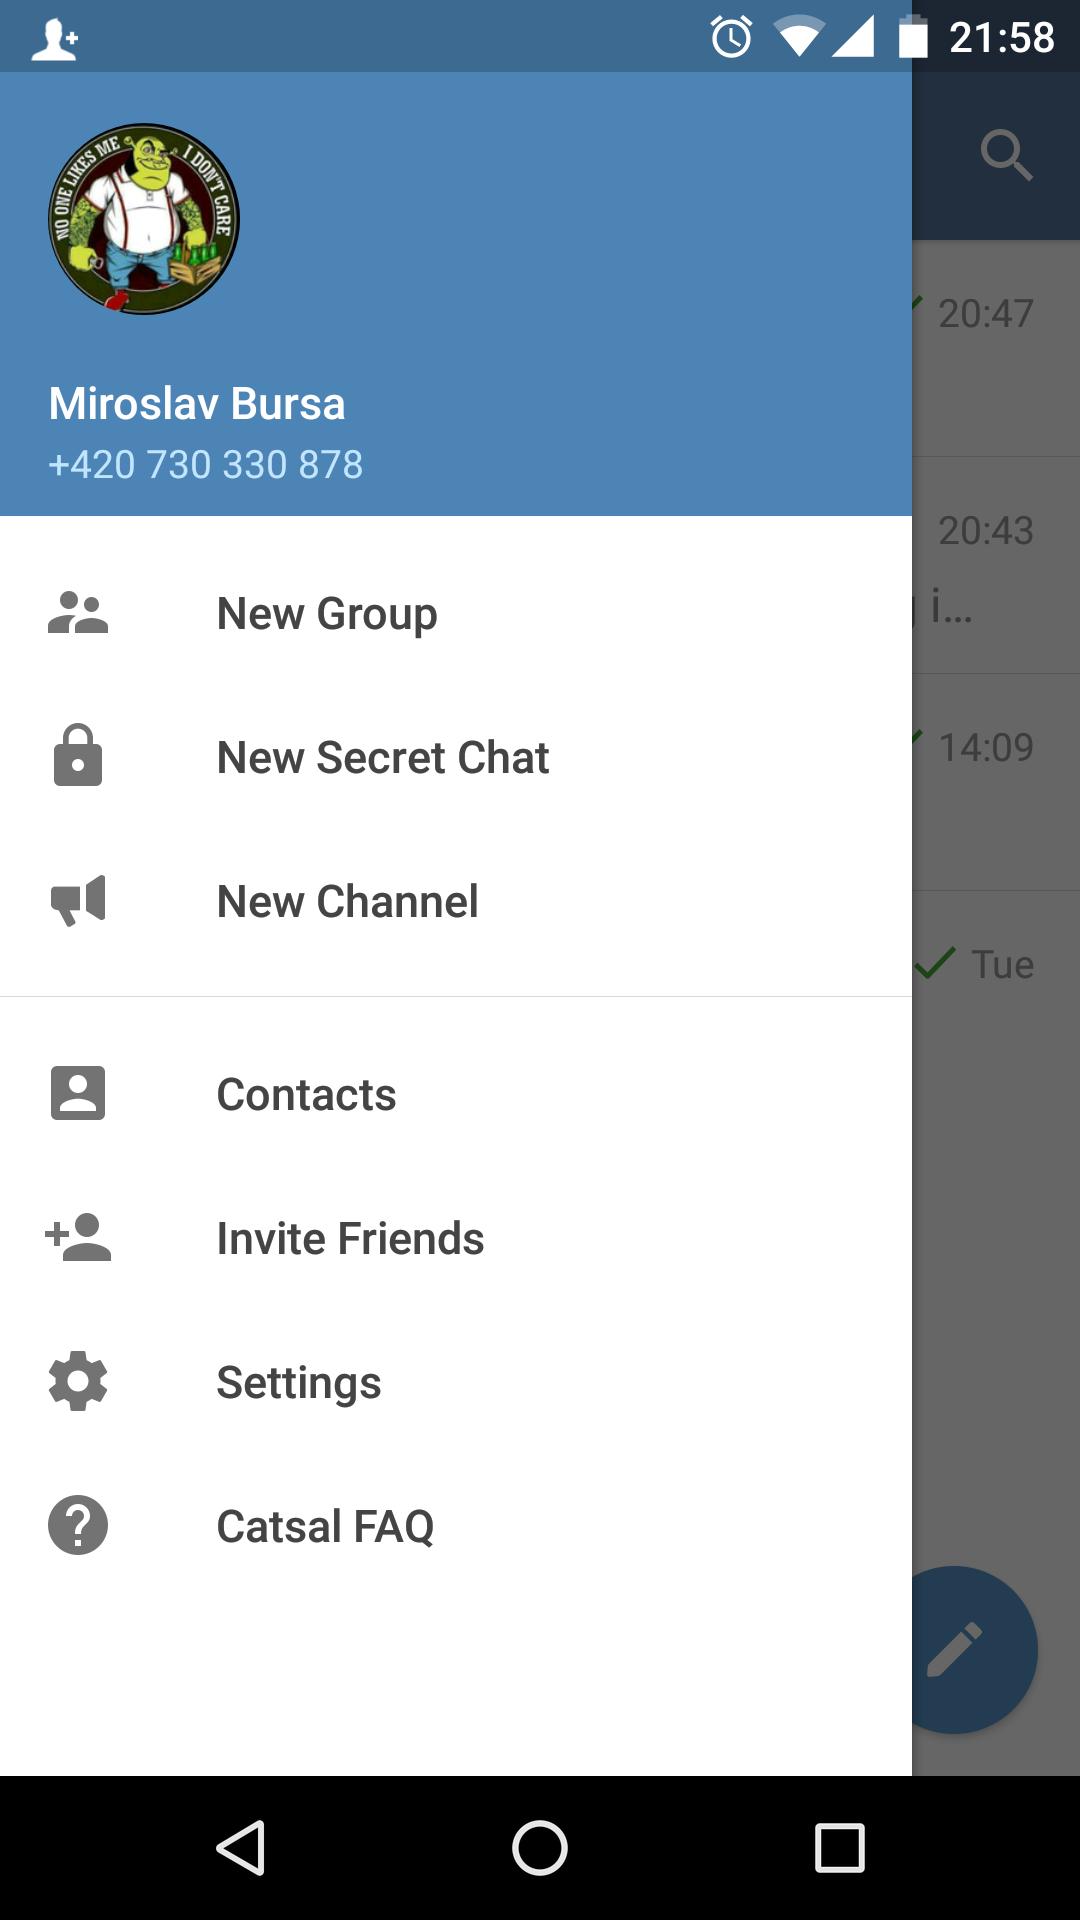 Телеграмм скачать бесплатно для айфон на русском на андроид фото 114